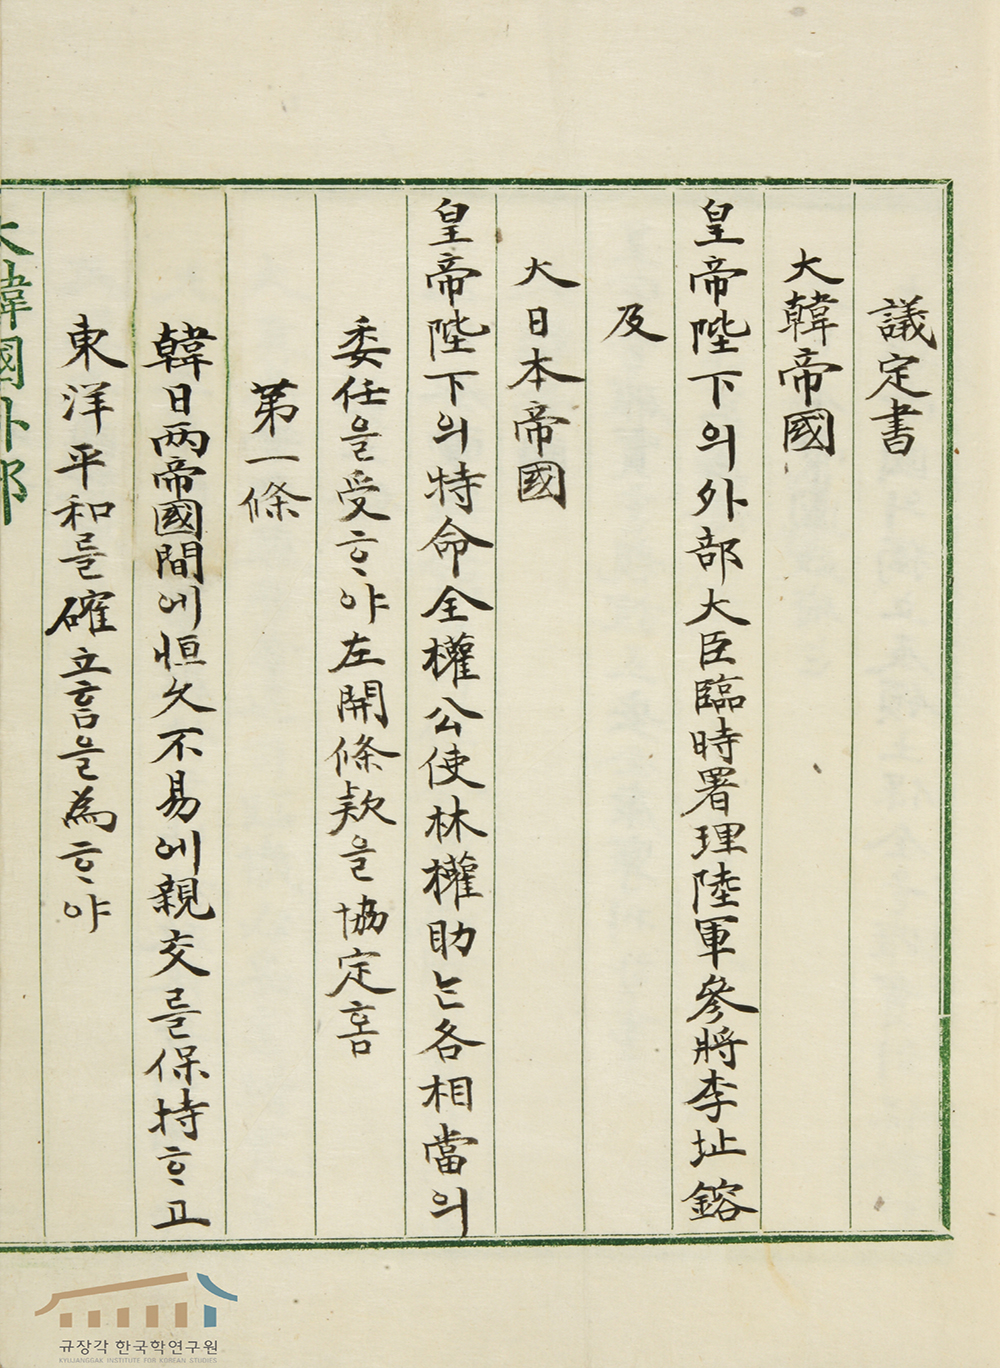 TheKorea-Japan Treaty of 1904